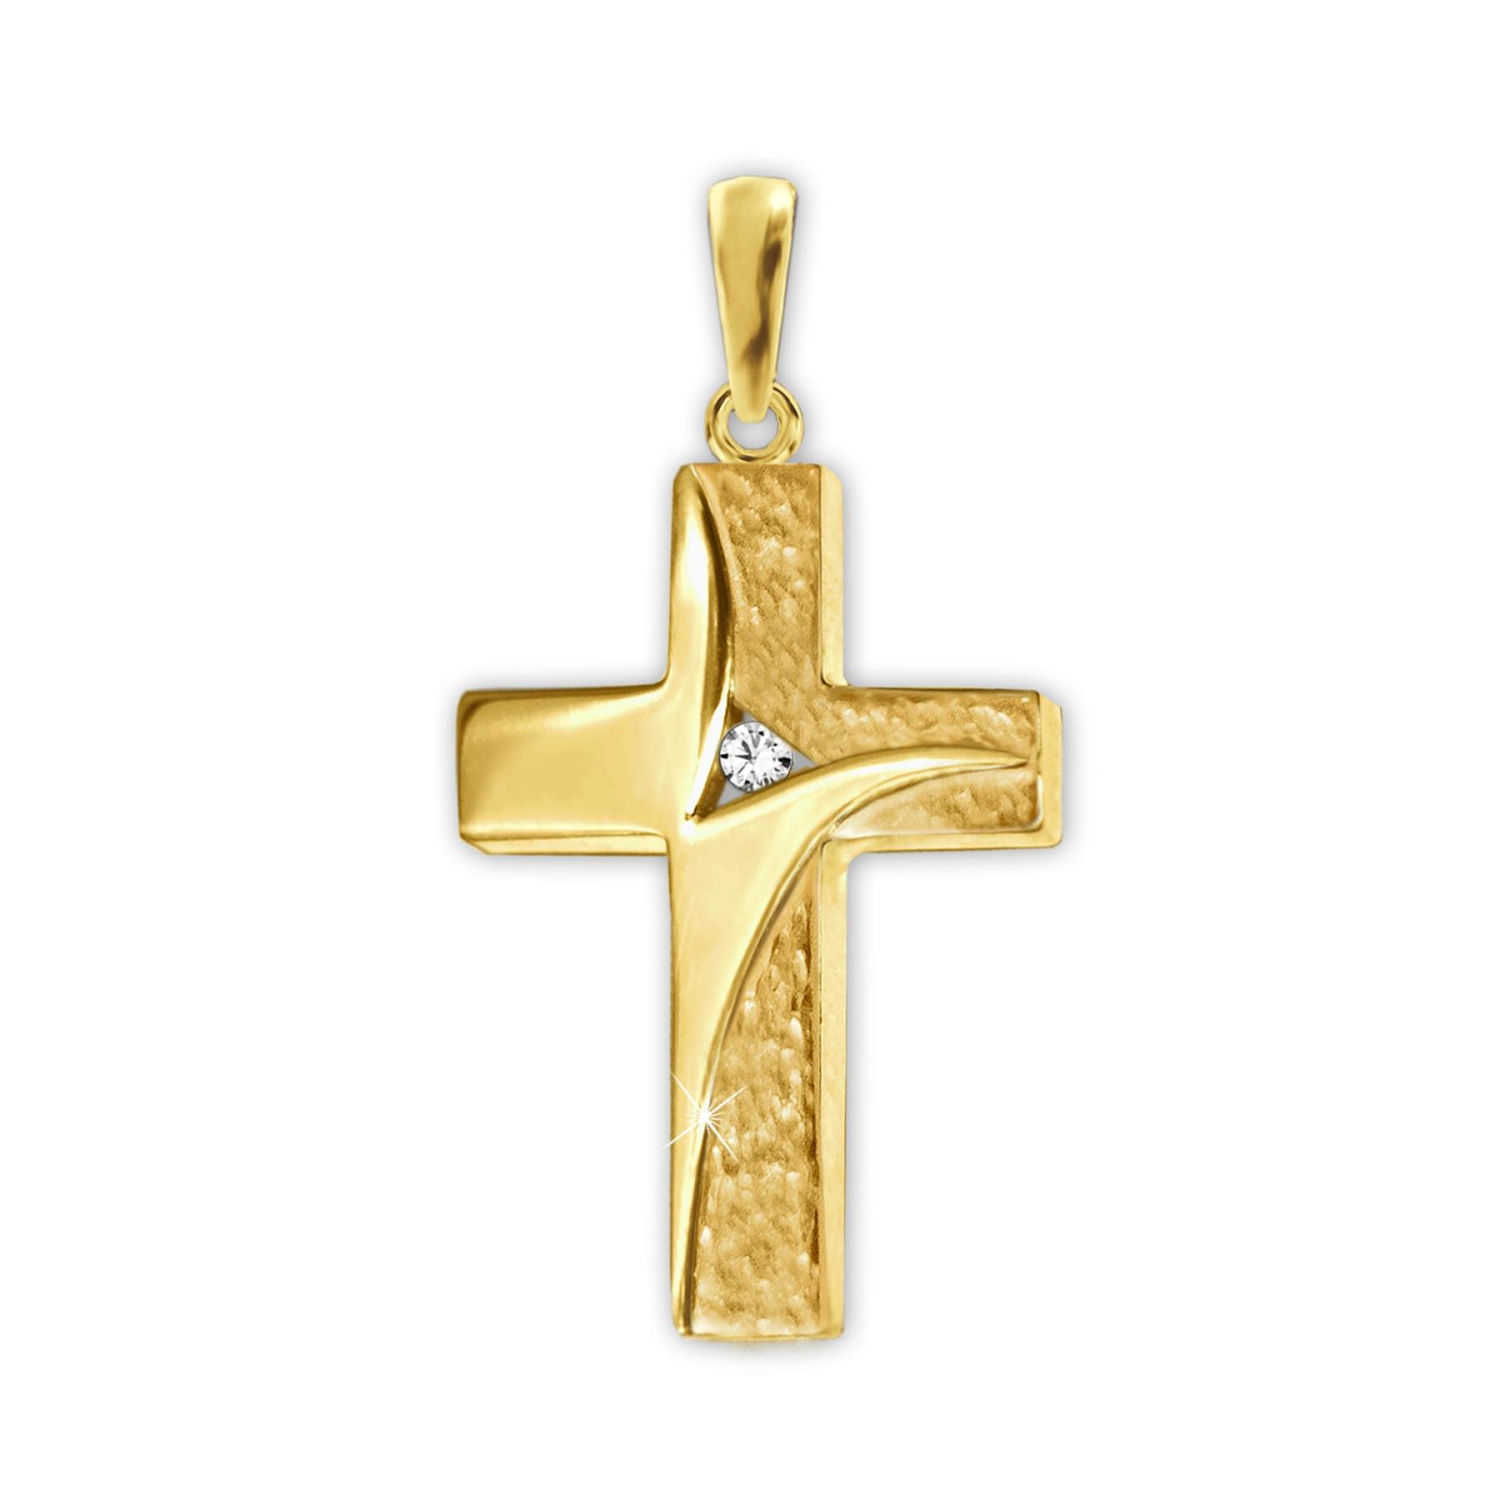 Goldener Anhänger elegantes Kreuz 17 mm, geschwungene Oberflächen mit 1 Zirkonia mittig 333 GOLD 8 KARAT